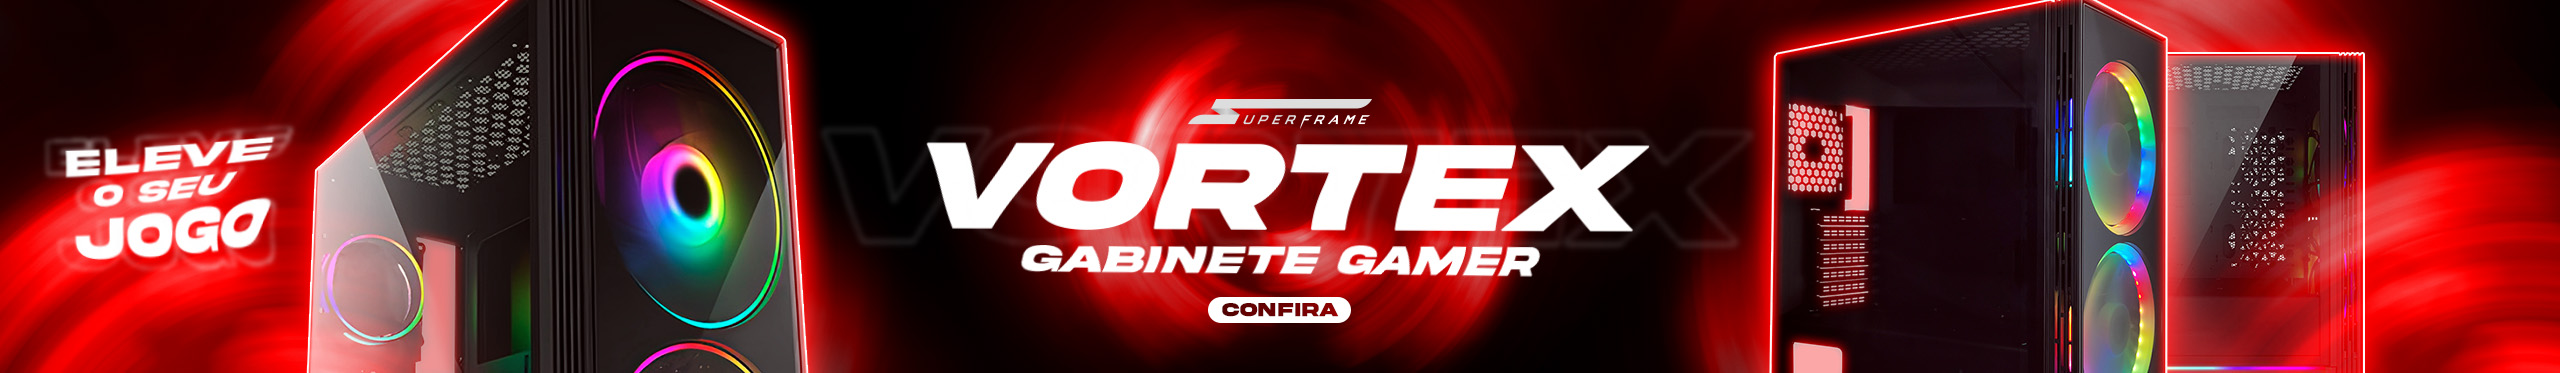 Gabinete Gamer SuperFrame Vortex | Uma tempestade de estilo. Saiba mais!